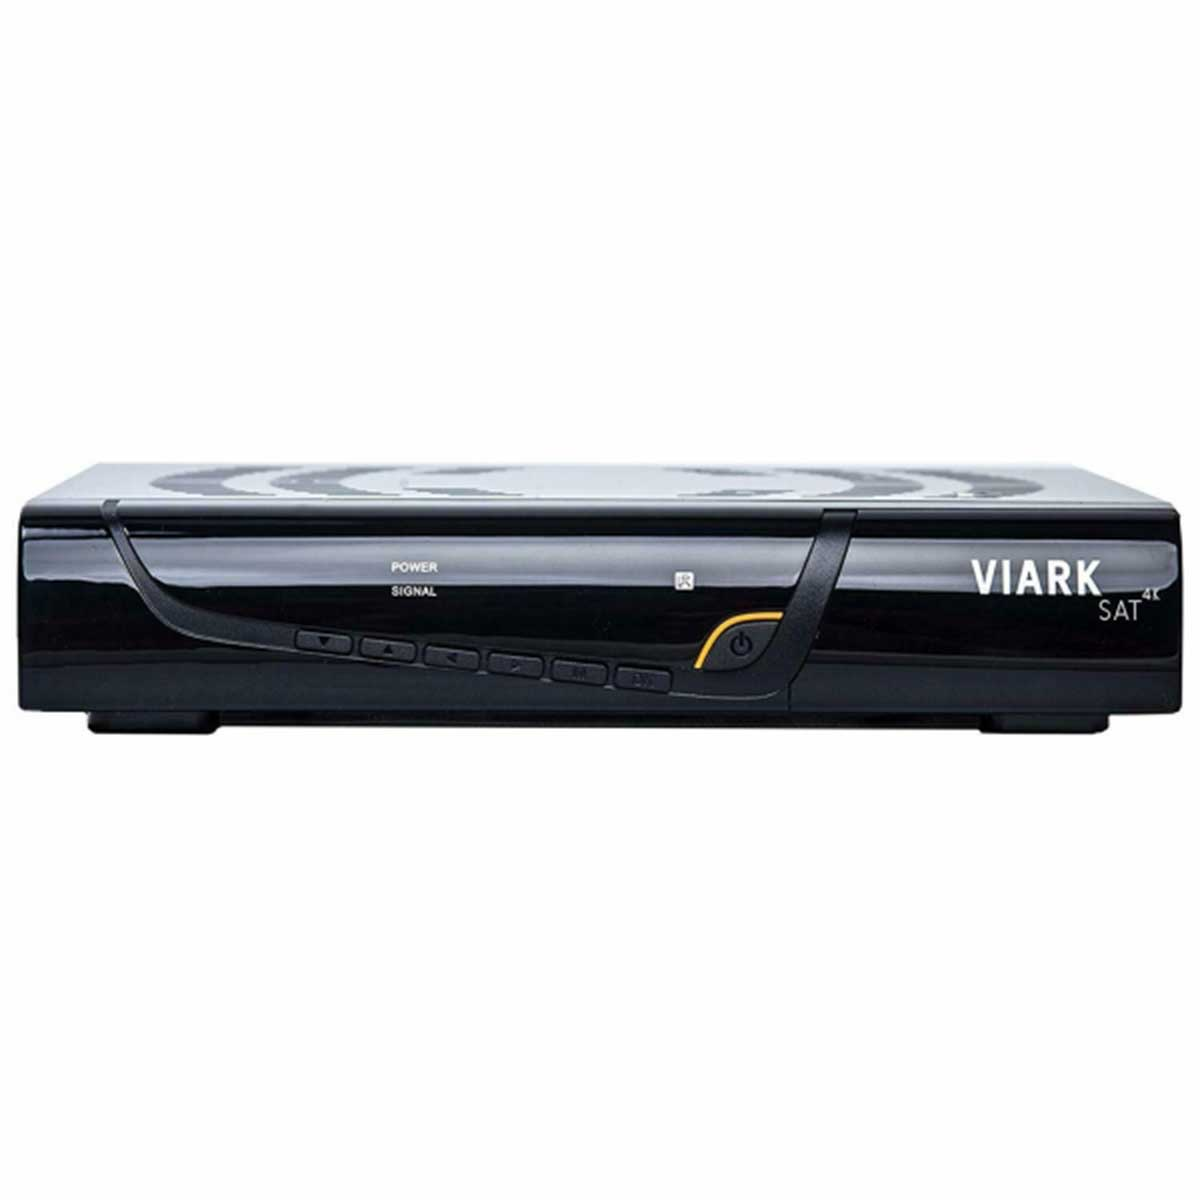 VIARK SAT 4K (HDTV, schwarz) Sat-Receiver